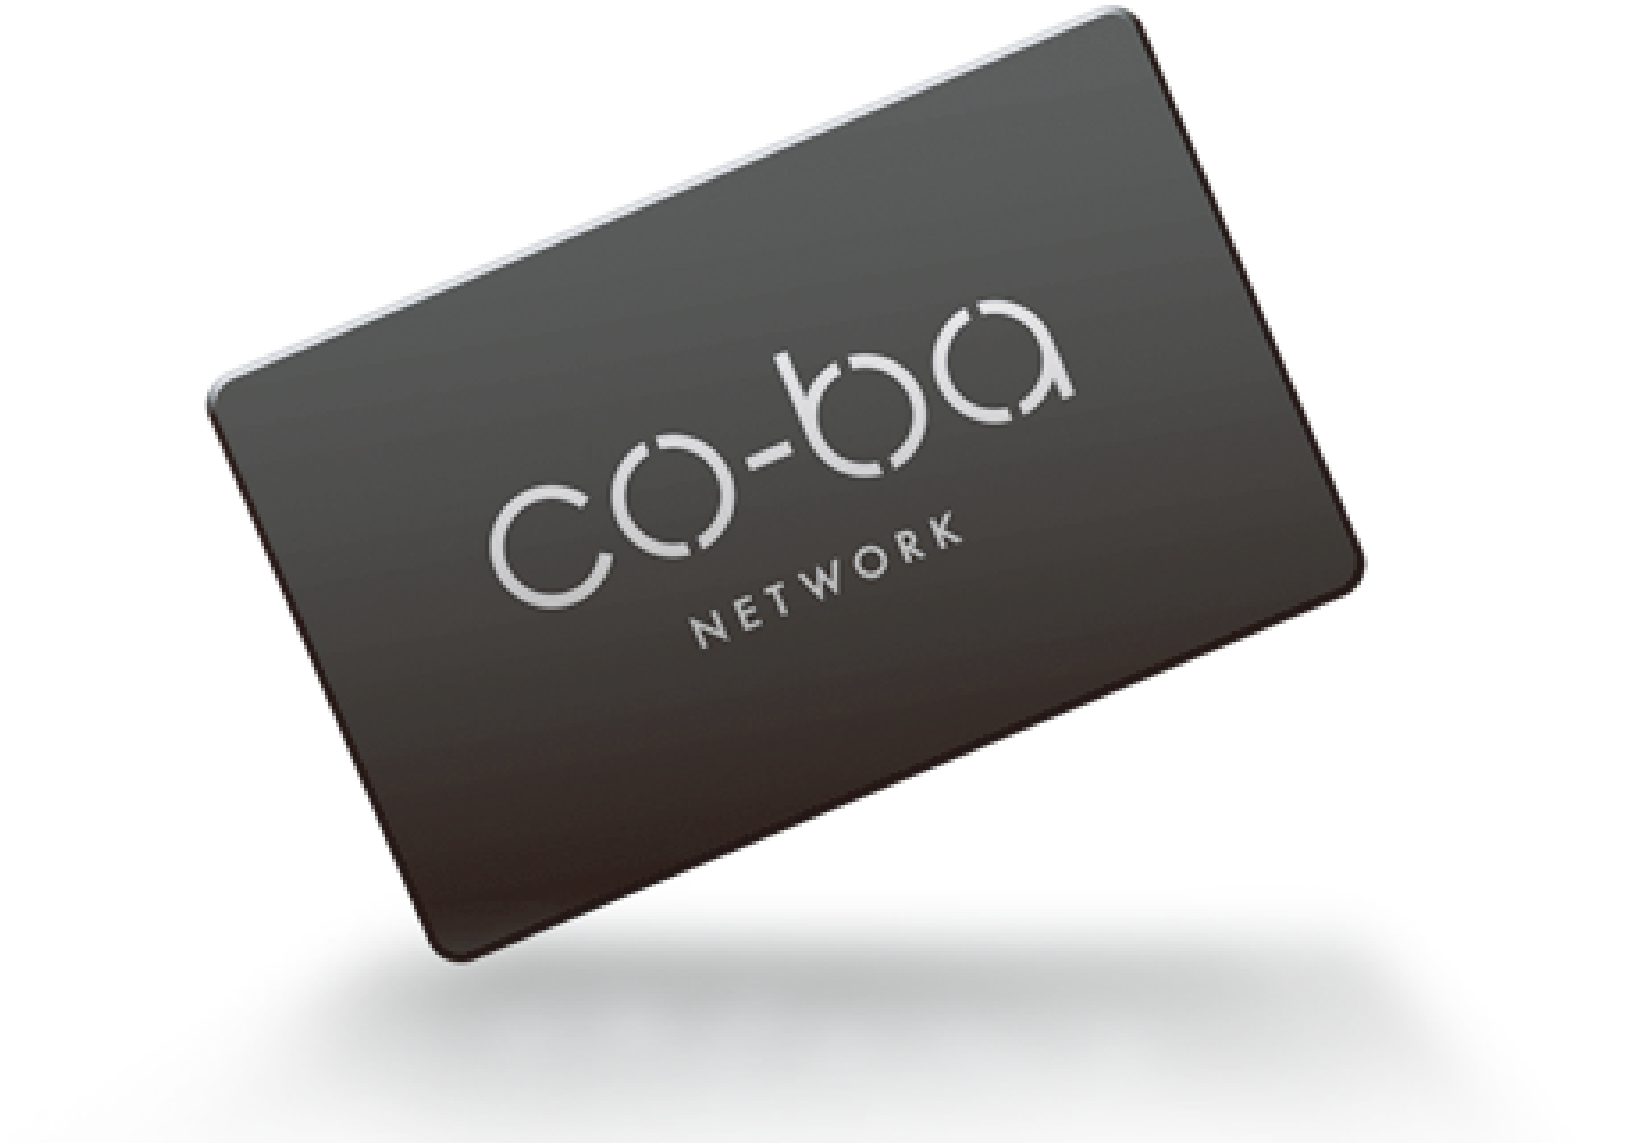 co-ba-network